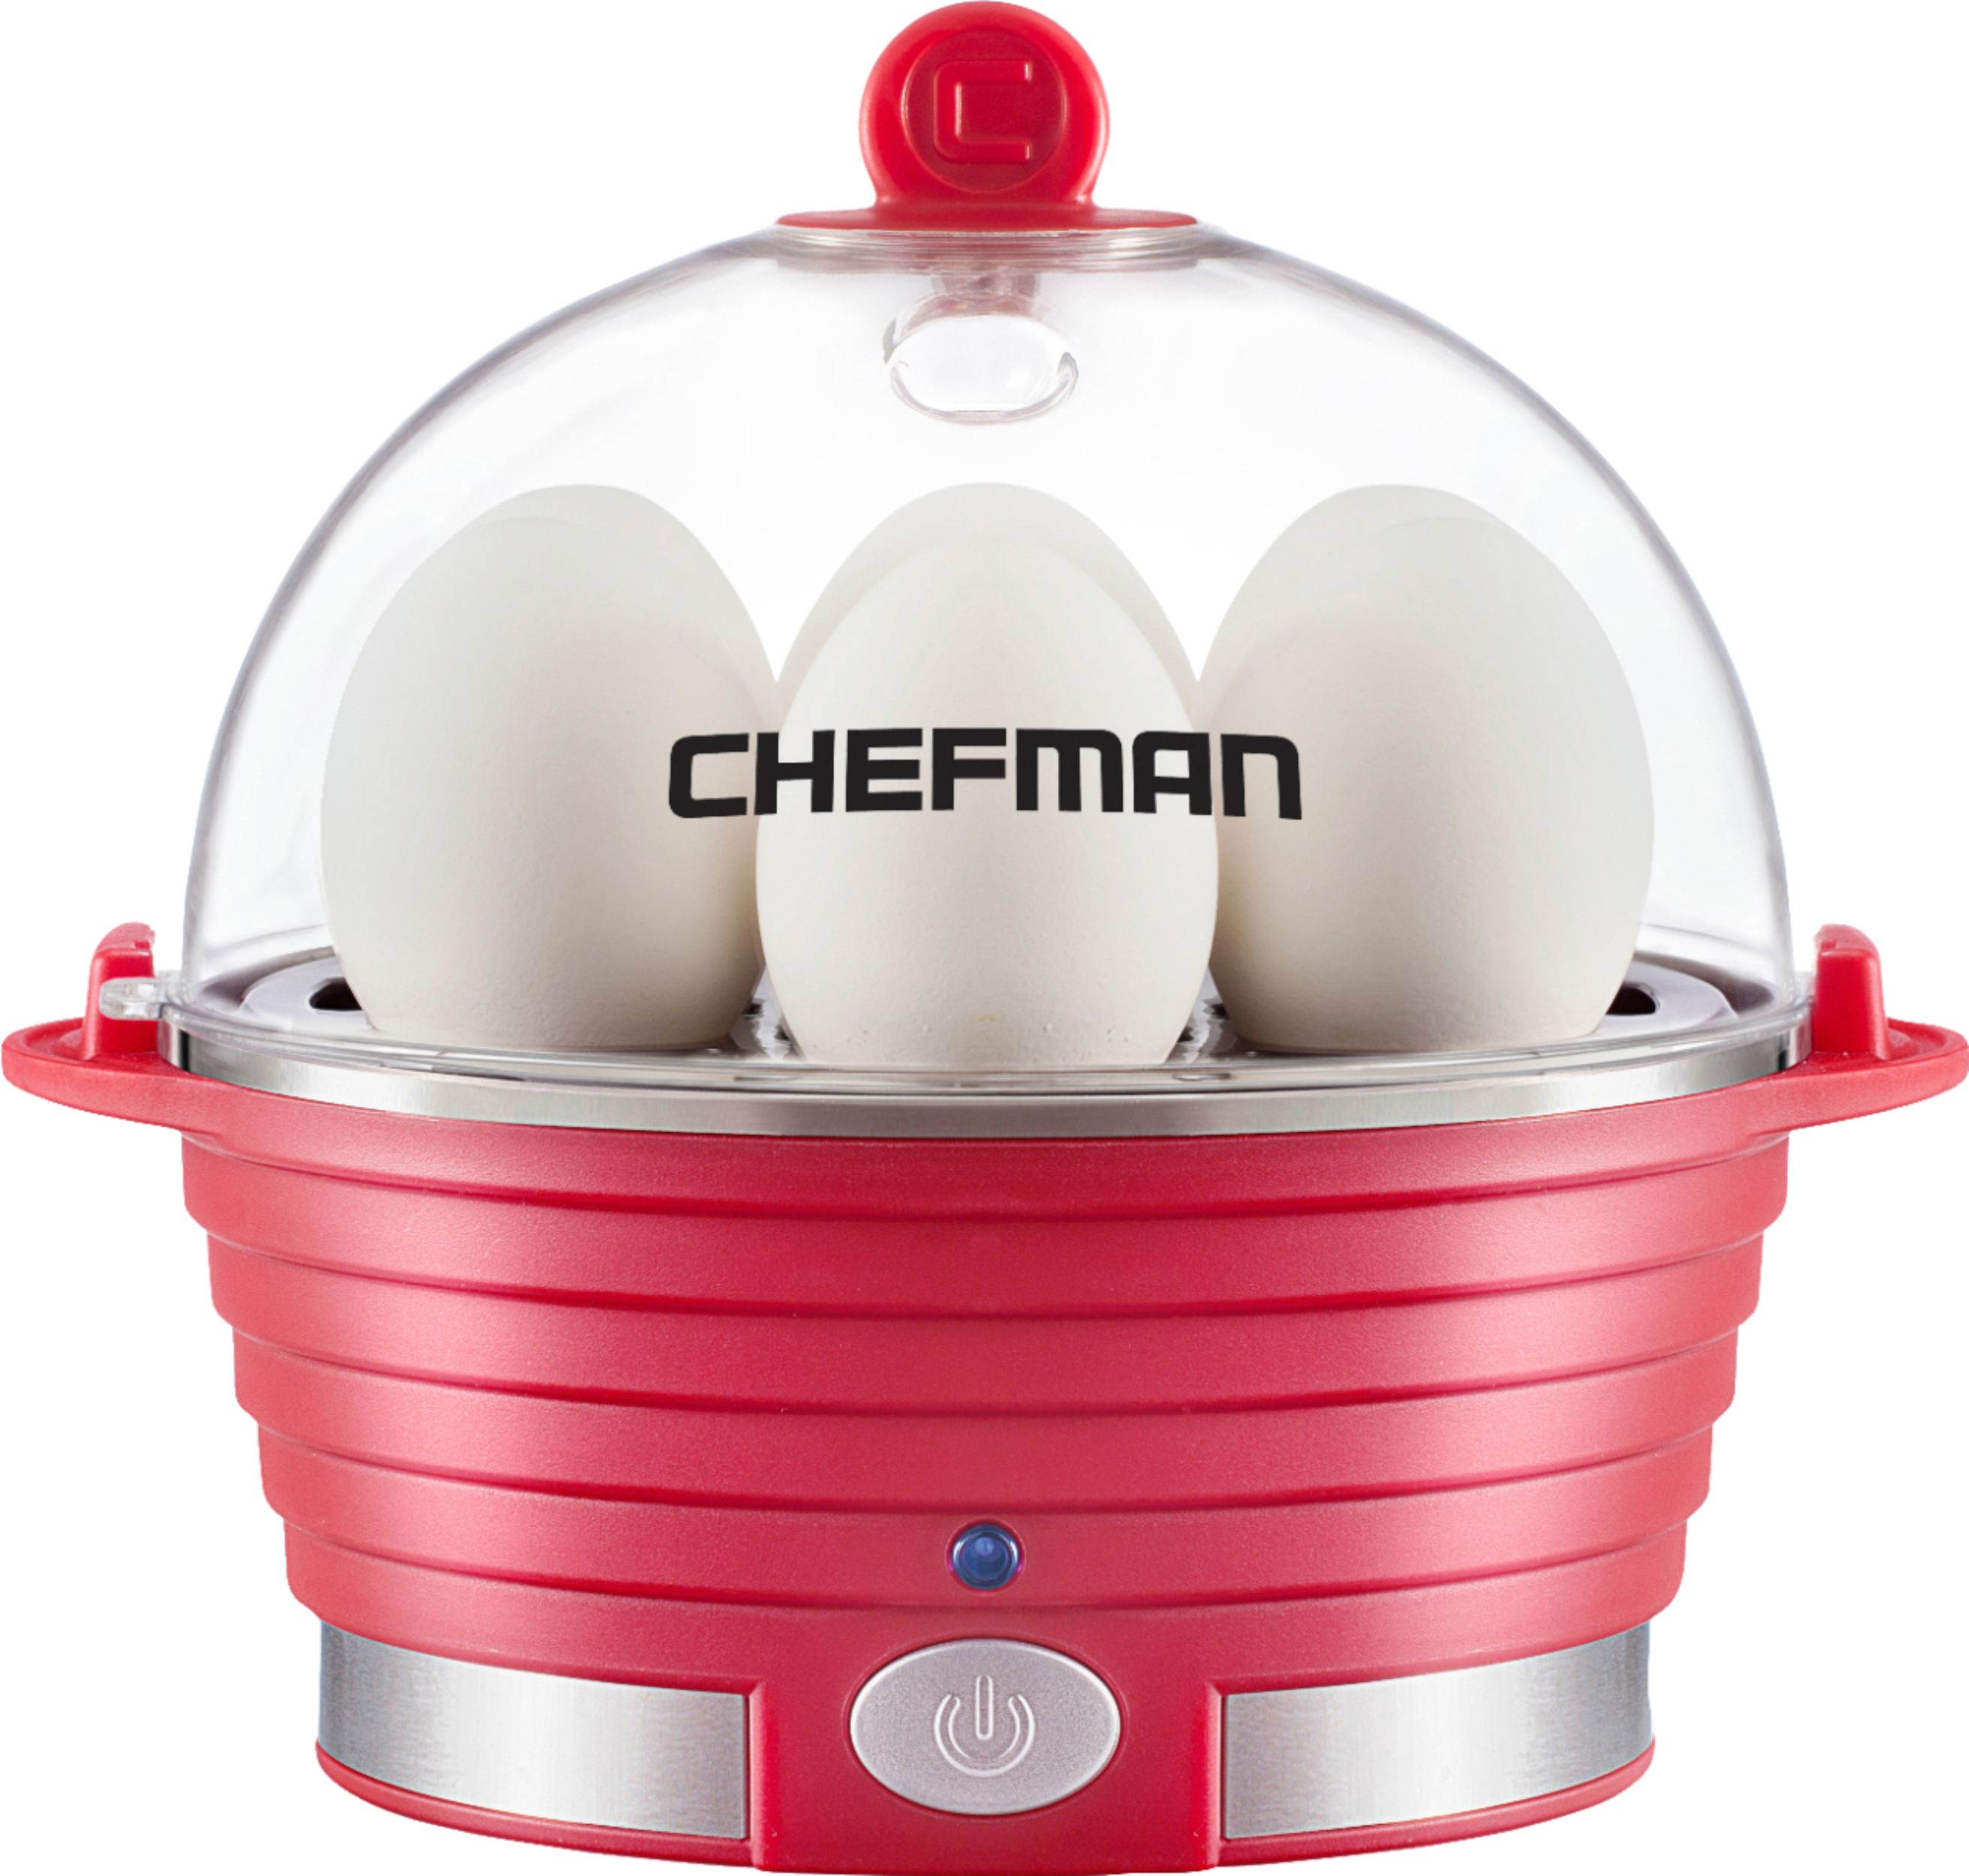 Best Buy: Chefman Electric Egg Cooker Red RJ24-V2-RED